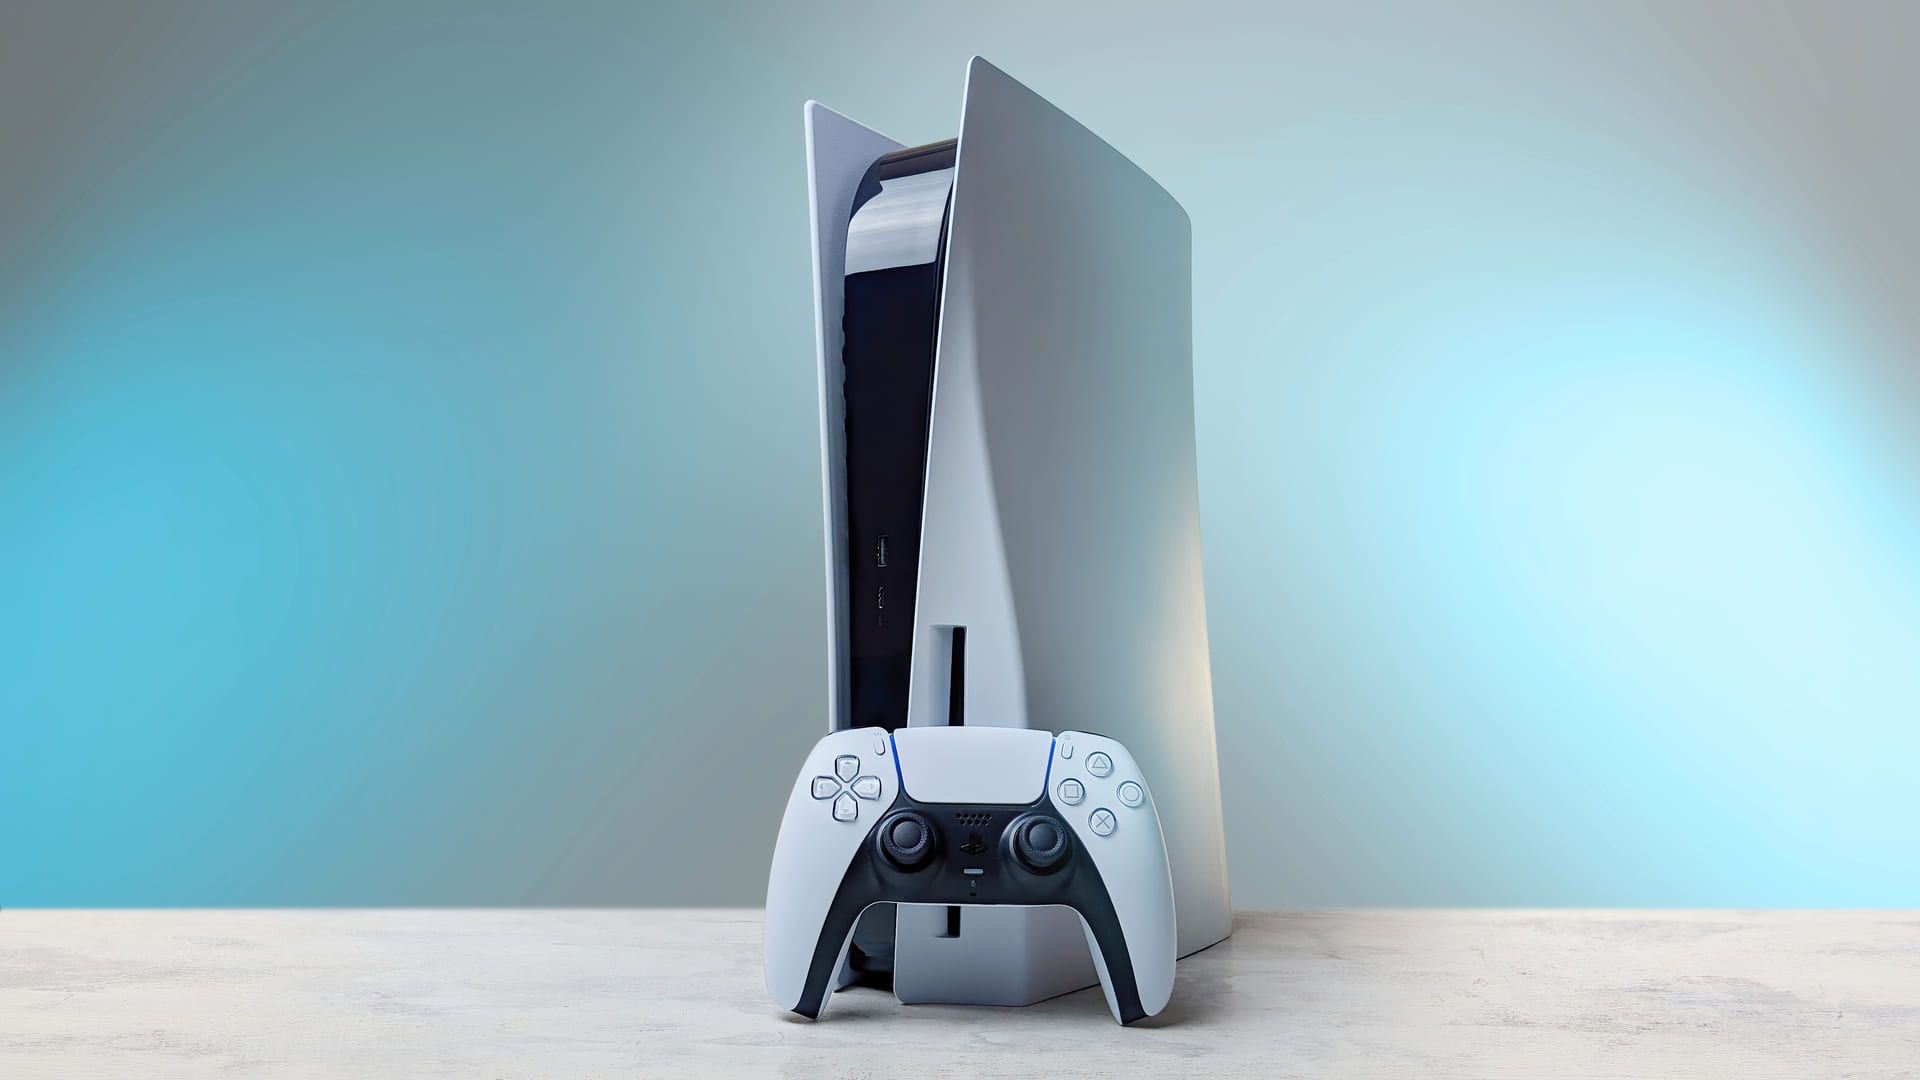 O PS5 é o novo console da Sony. (Foto: Shuuterstock/Mr.Mikla)